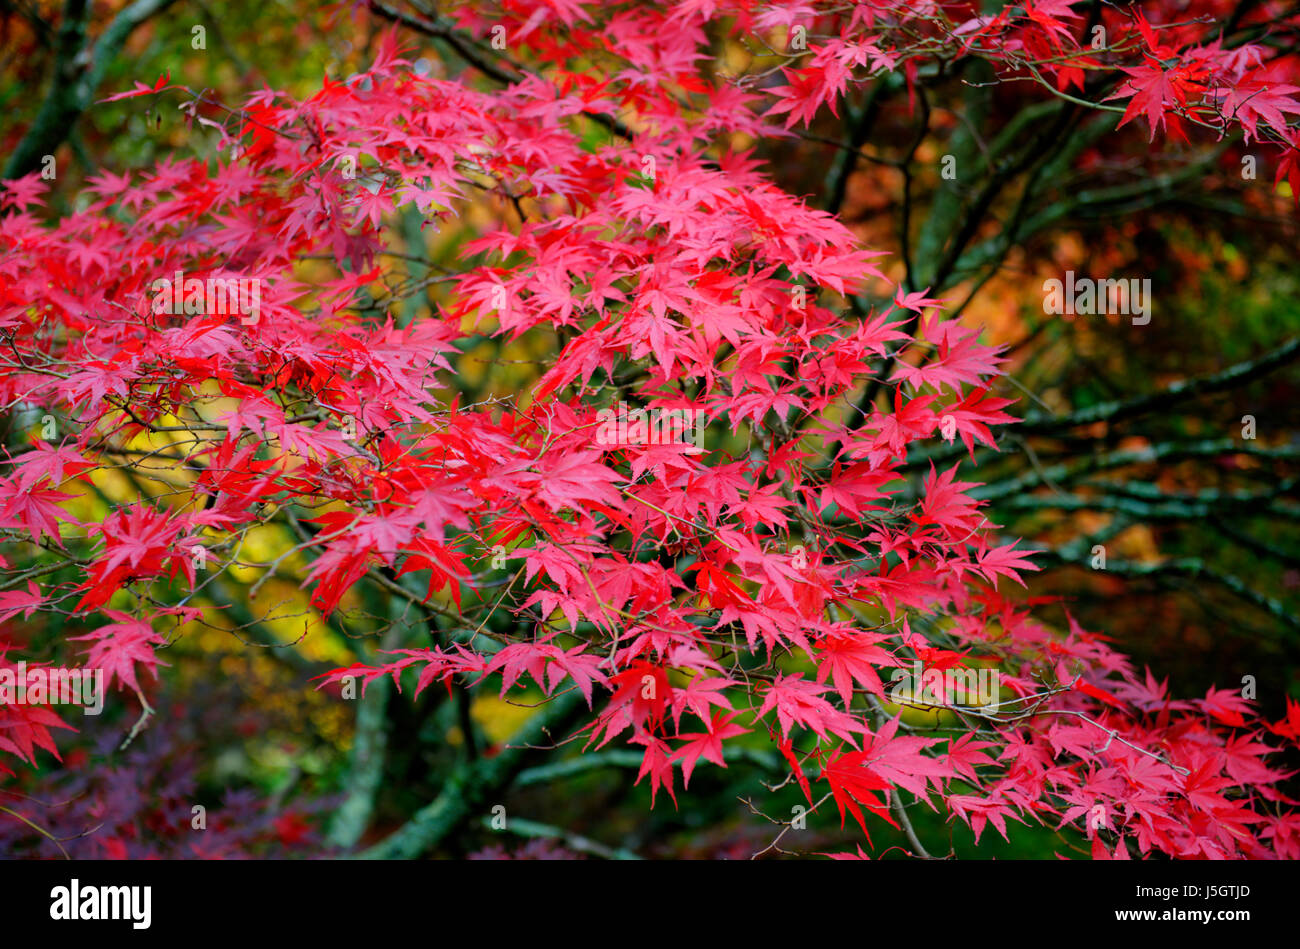 Japanese Maple trees in Autumn Stock Photo